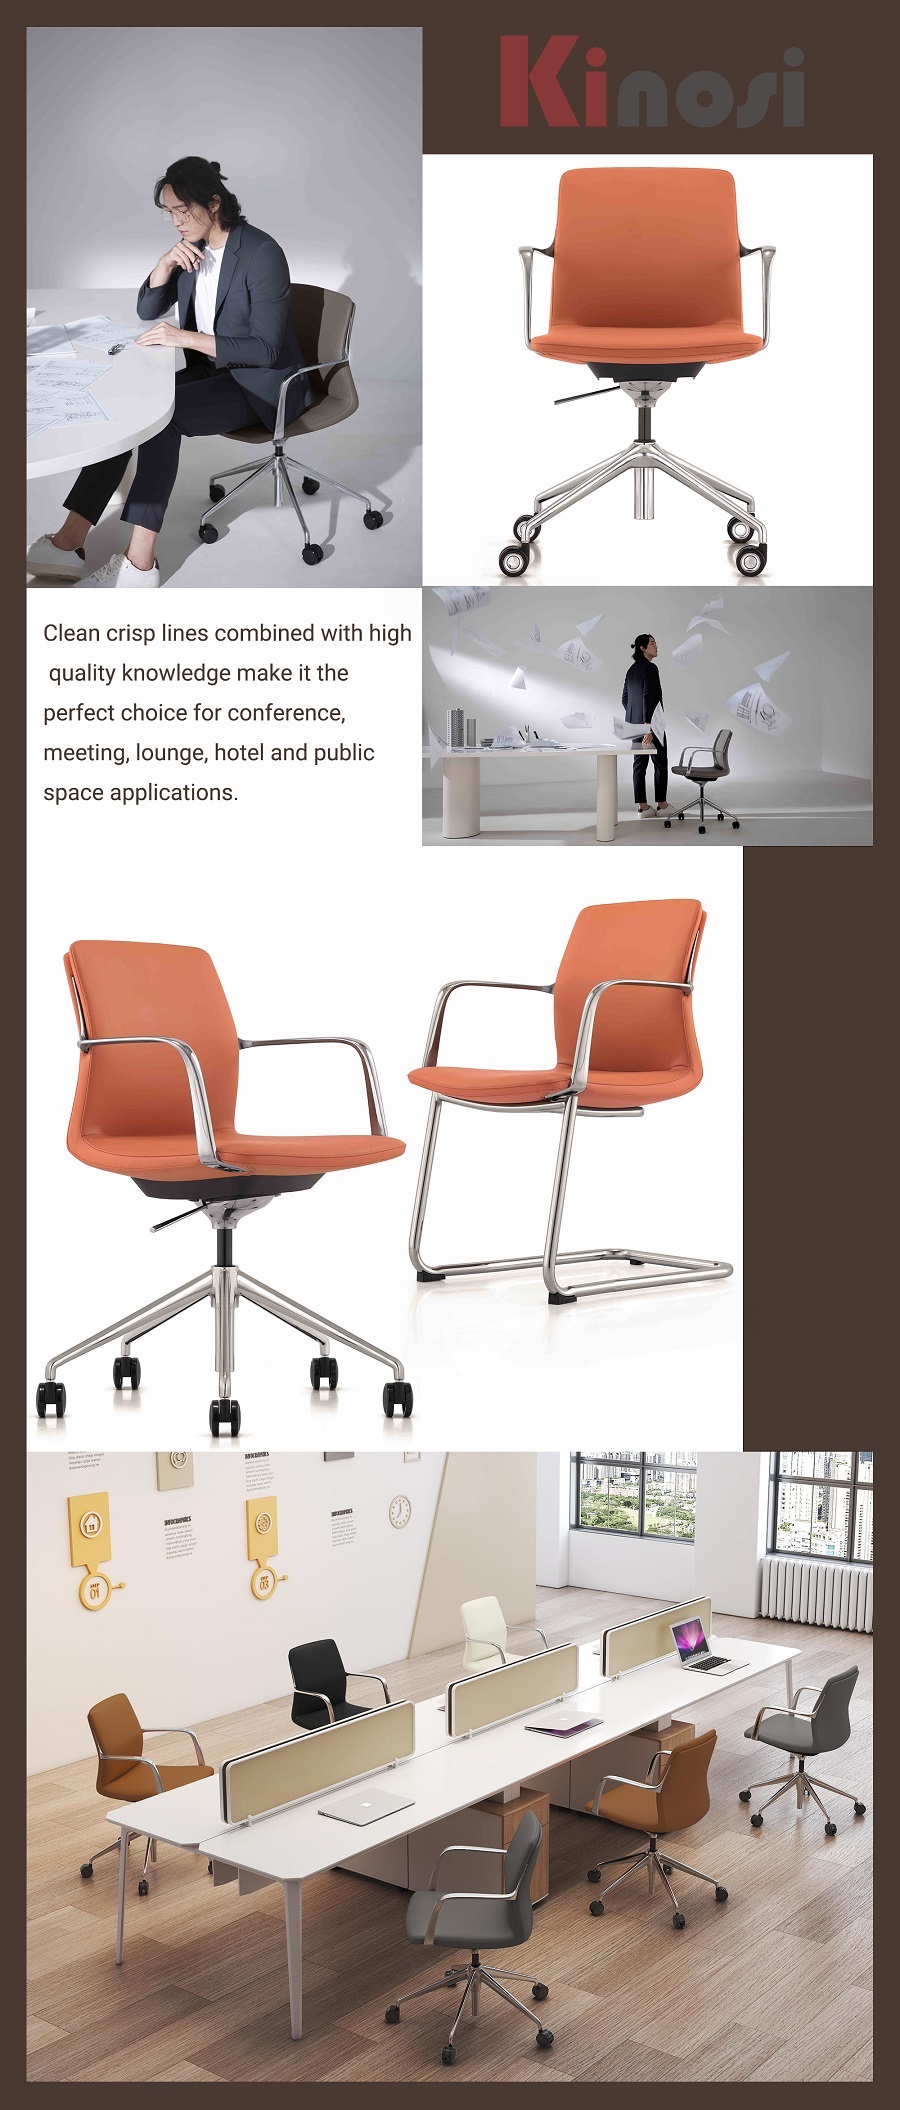 Dora_訪客椅_會議室椅_歐陸設計